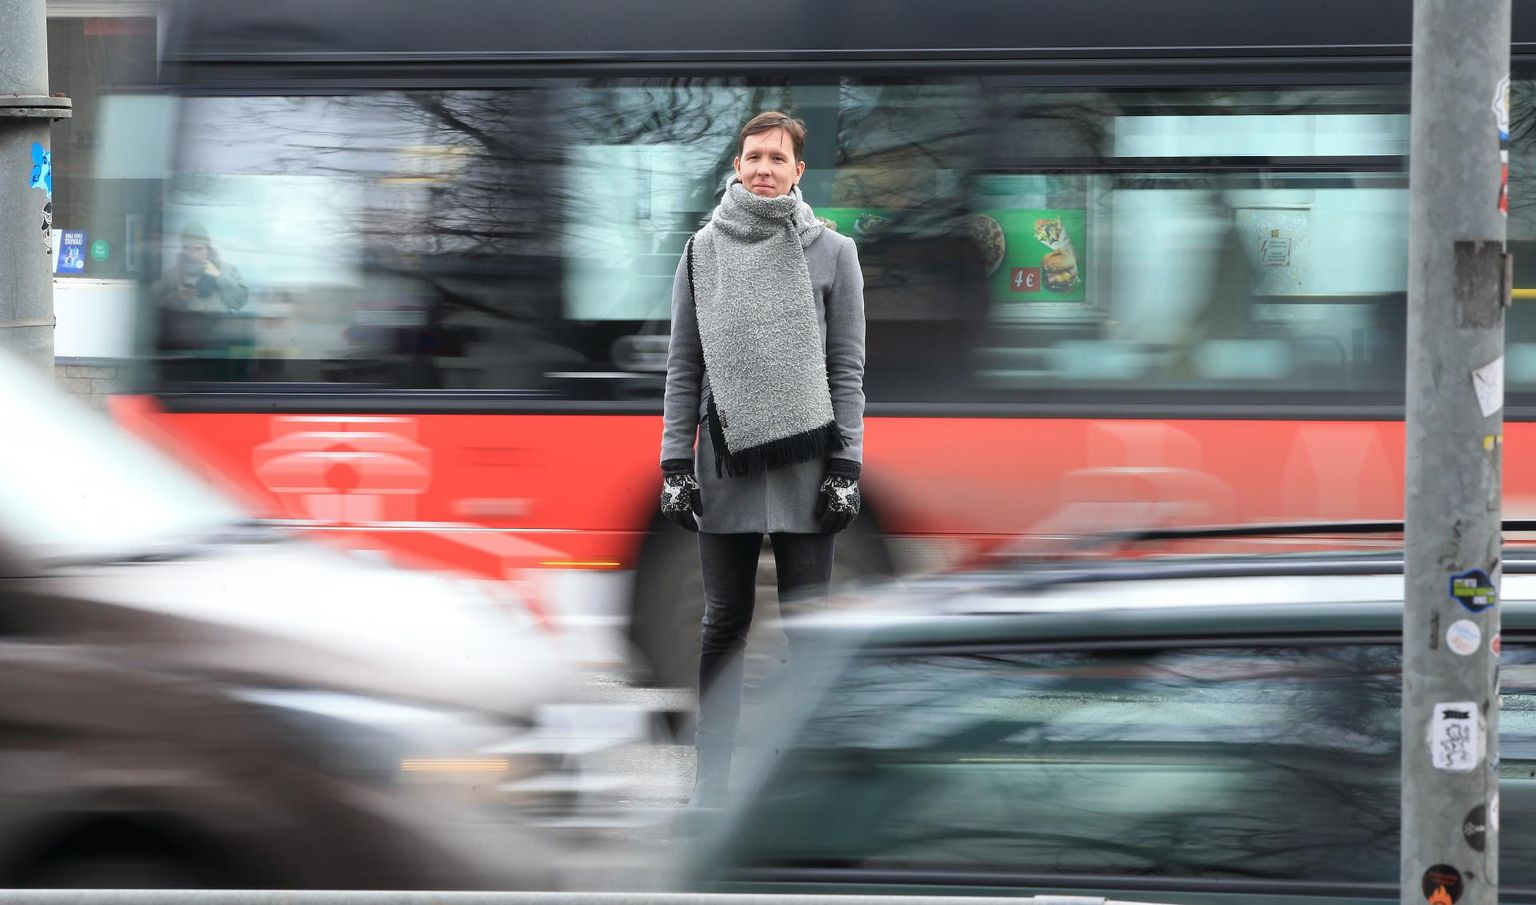 Kliimaspetsialist Kaspar Alev peab sõidukite vähendamist linnatänavatel oluliseks eesmärgiks. Paraku on Tartus viimase kümne aasta jooksul tuhande inimese kohta juurde tulnud sada autot.